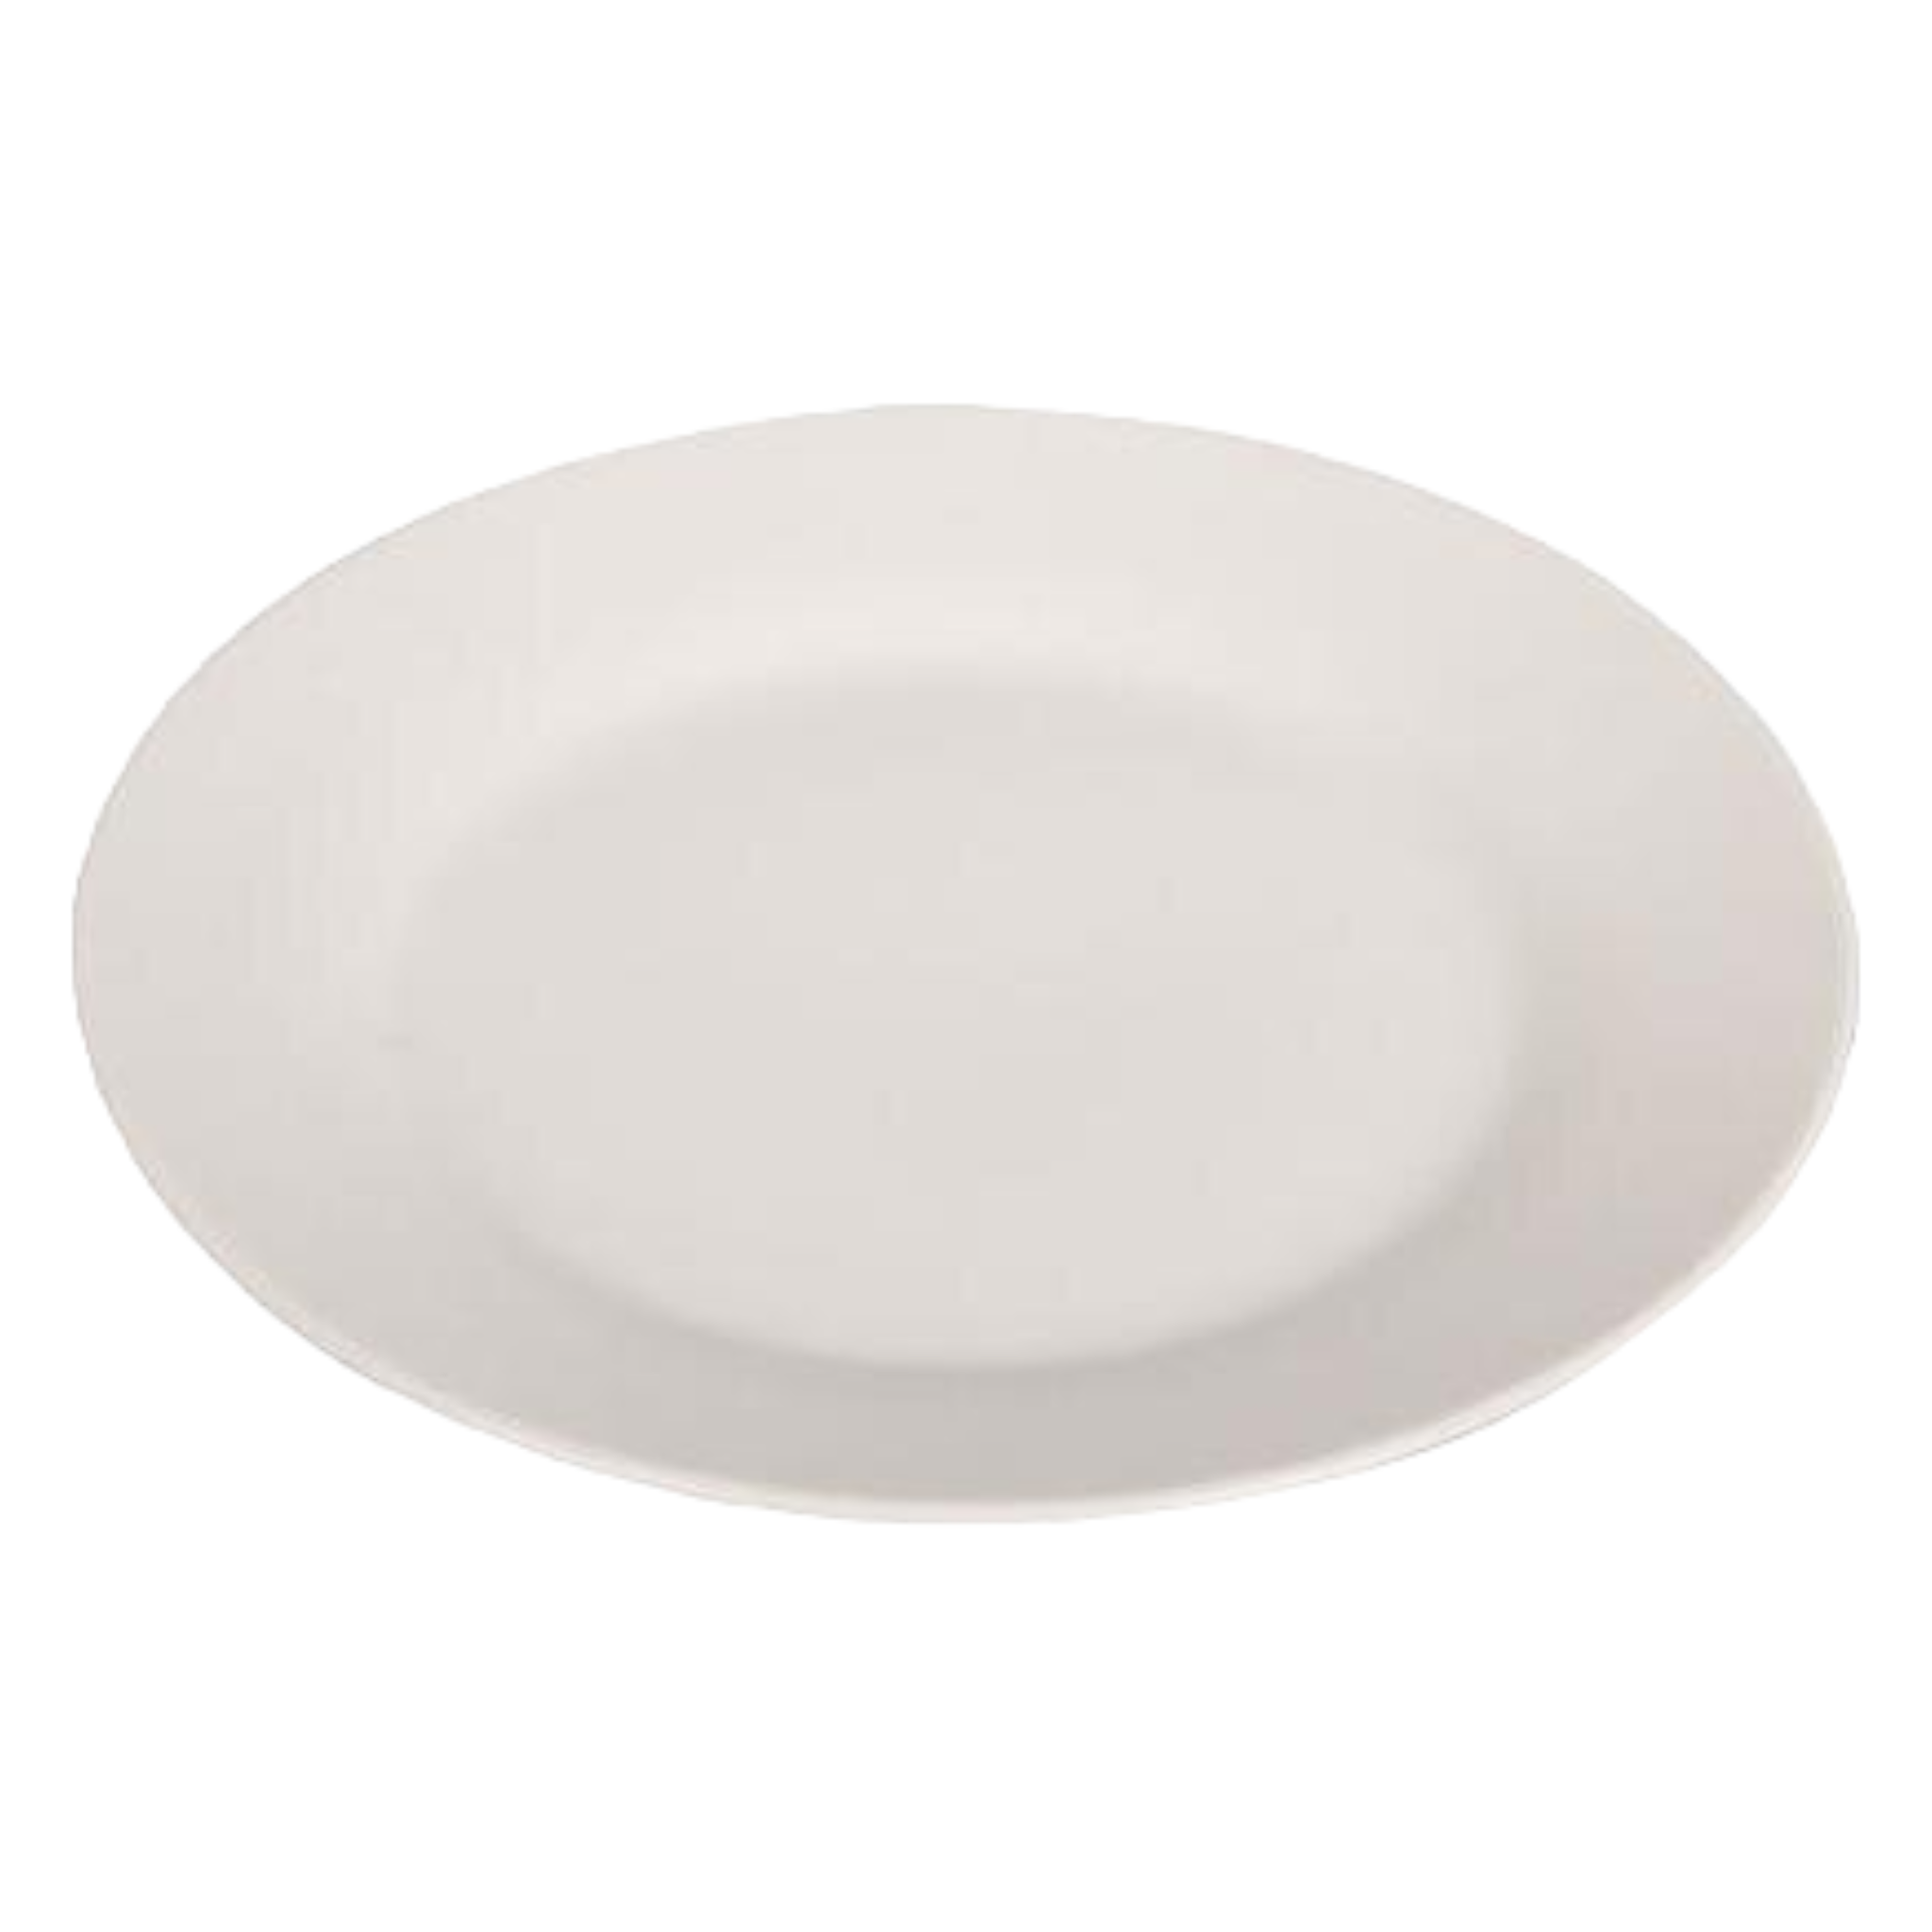 Ceramic Side Plate 19cm White Porcelain T0003